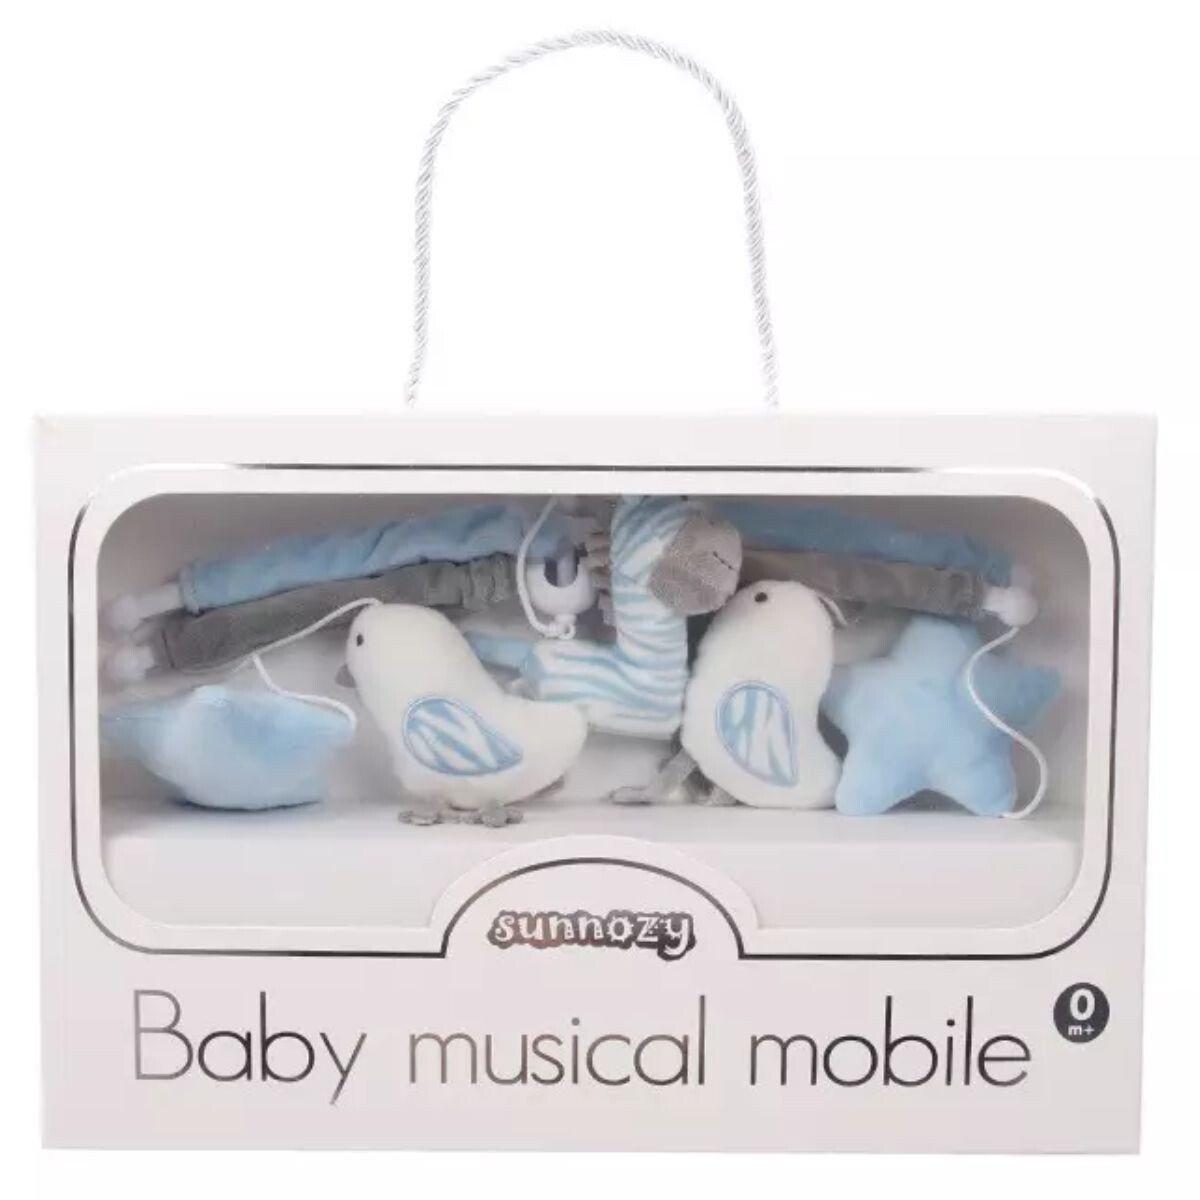 Móvil para Bebés Sunnozy Musical Colores Pasteles 